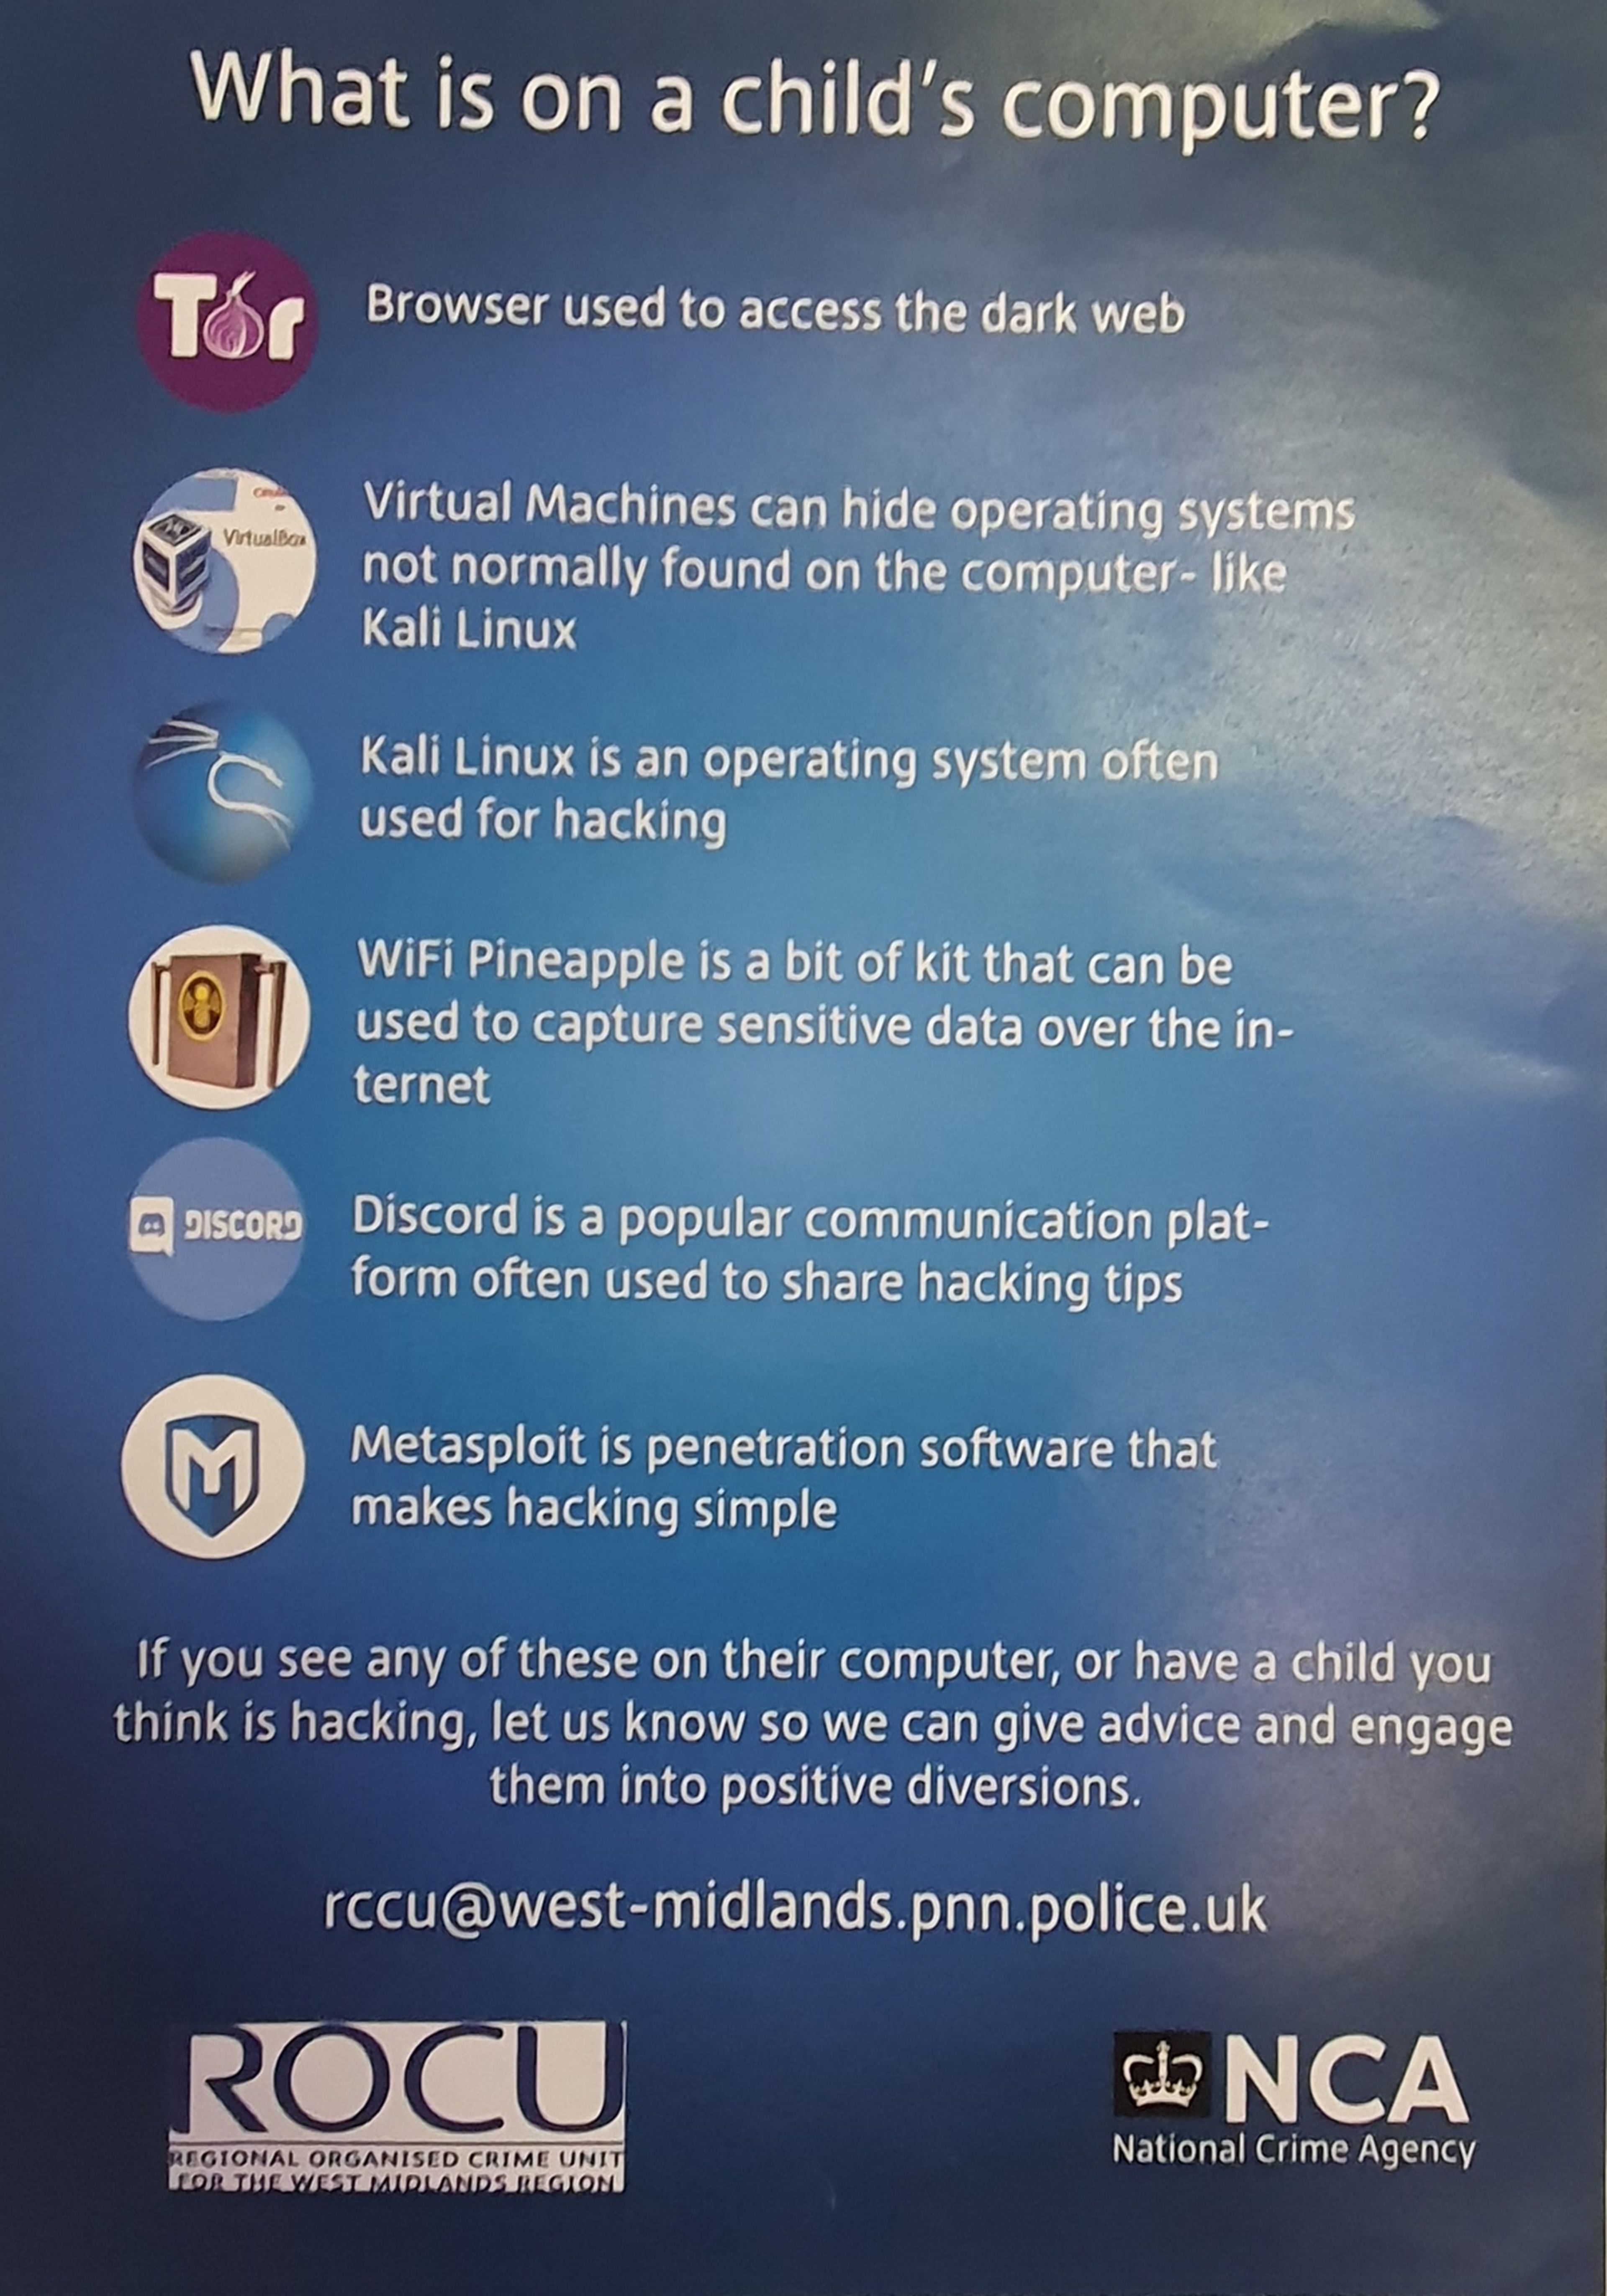 Si tu hijo usa Discord, Kali Linux o una máquina virtual, llama inmediatamente a la policía británica